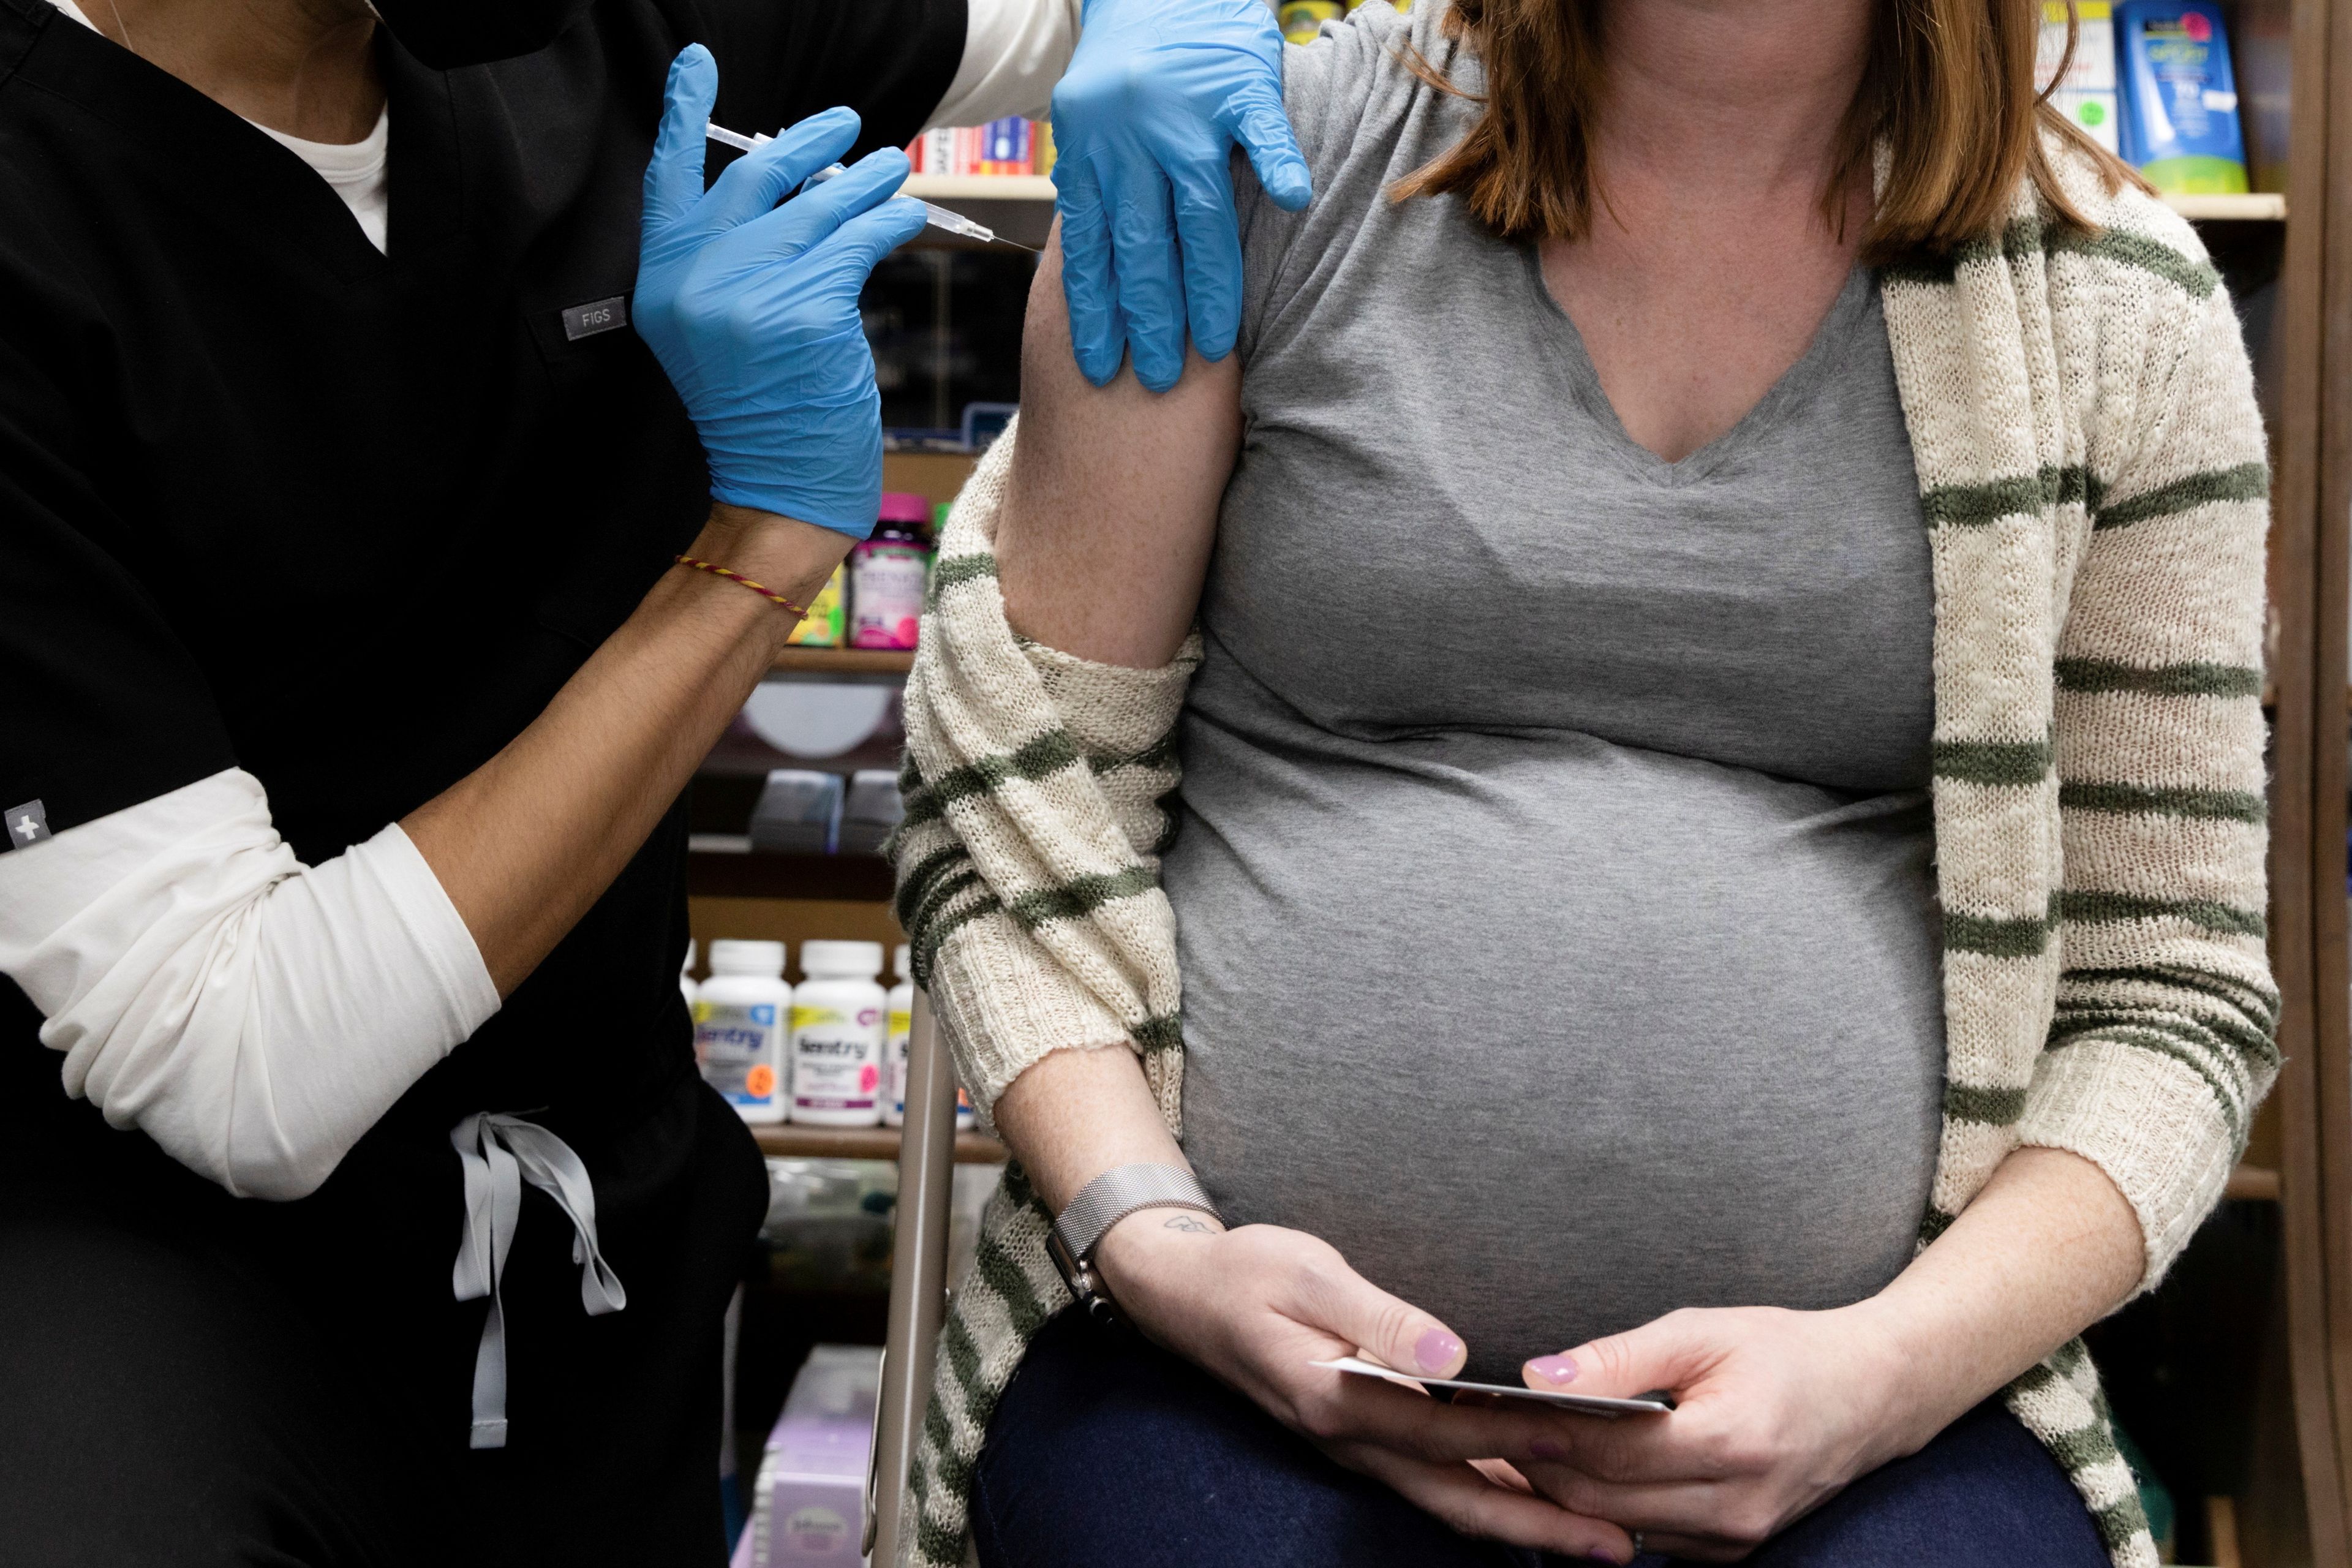 El organismo sanitario estadounidense recomienda a las embarazadas vacunarse contra el COVID-19: "Los beneficios superan cualquier riesgo potencial o desconocido"